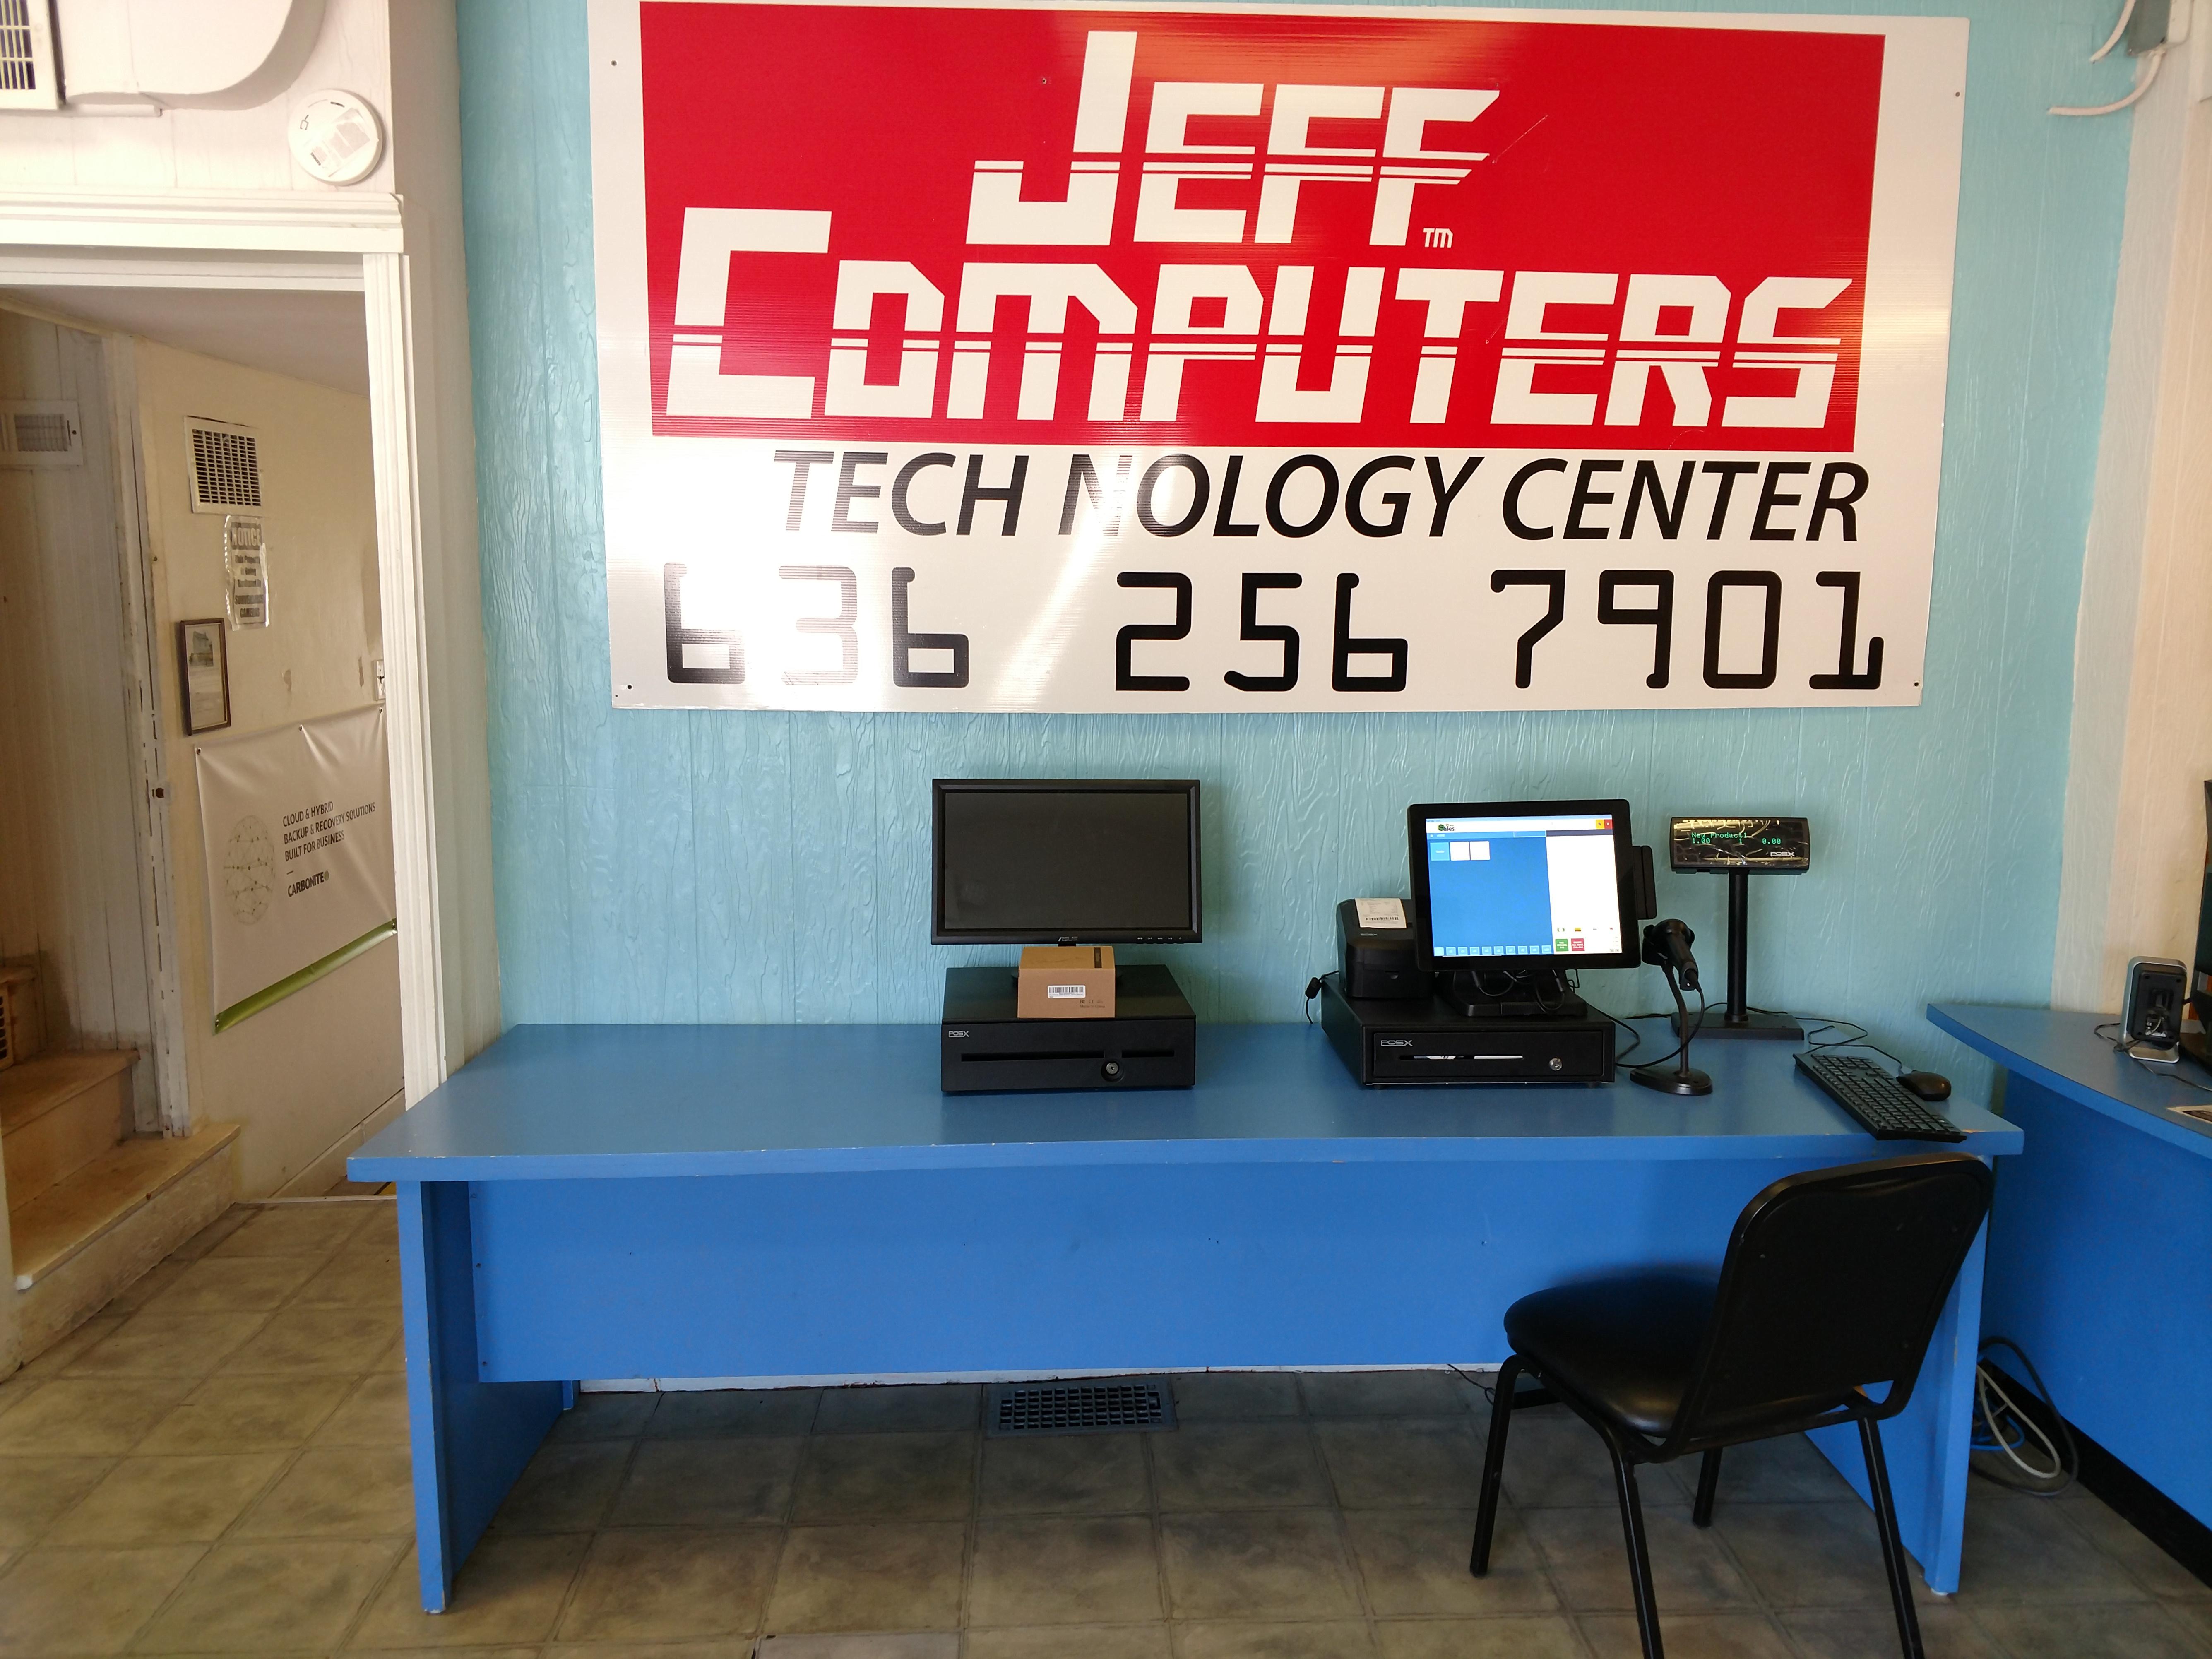 Jeff Computers Photo